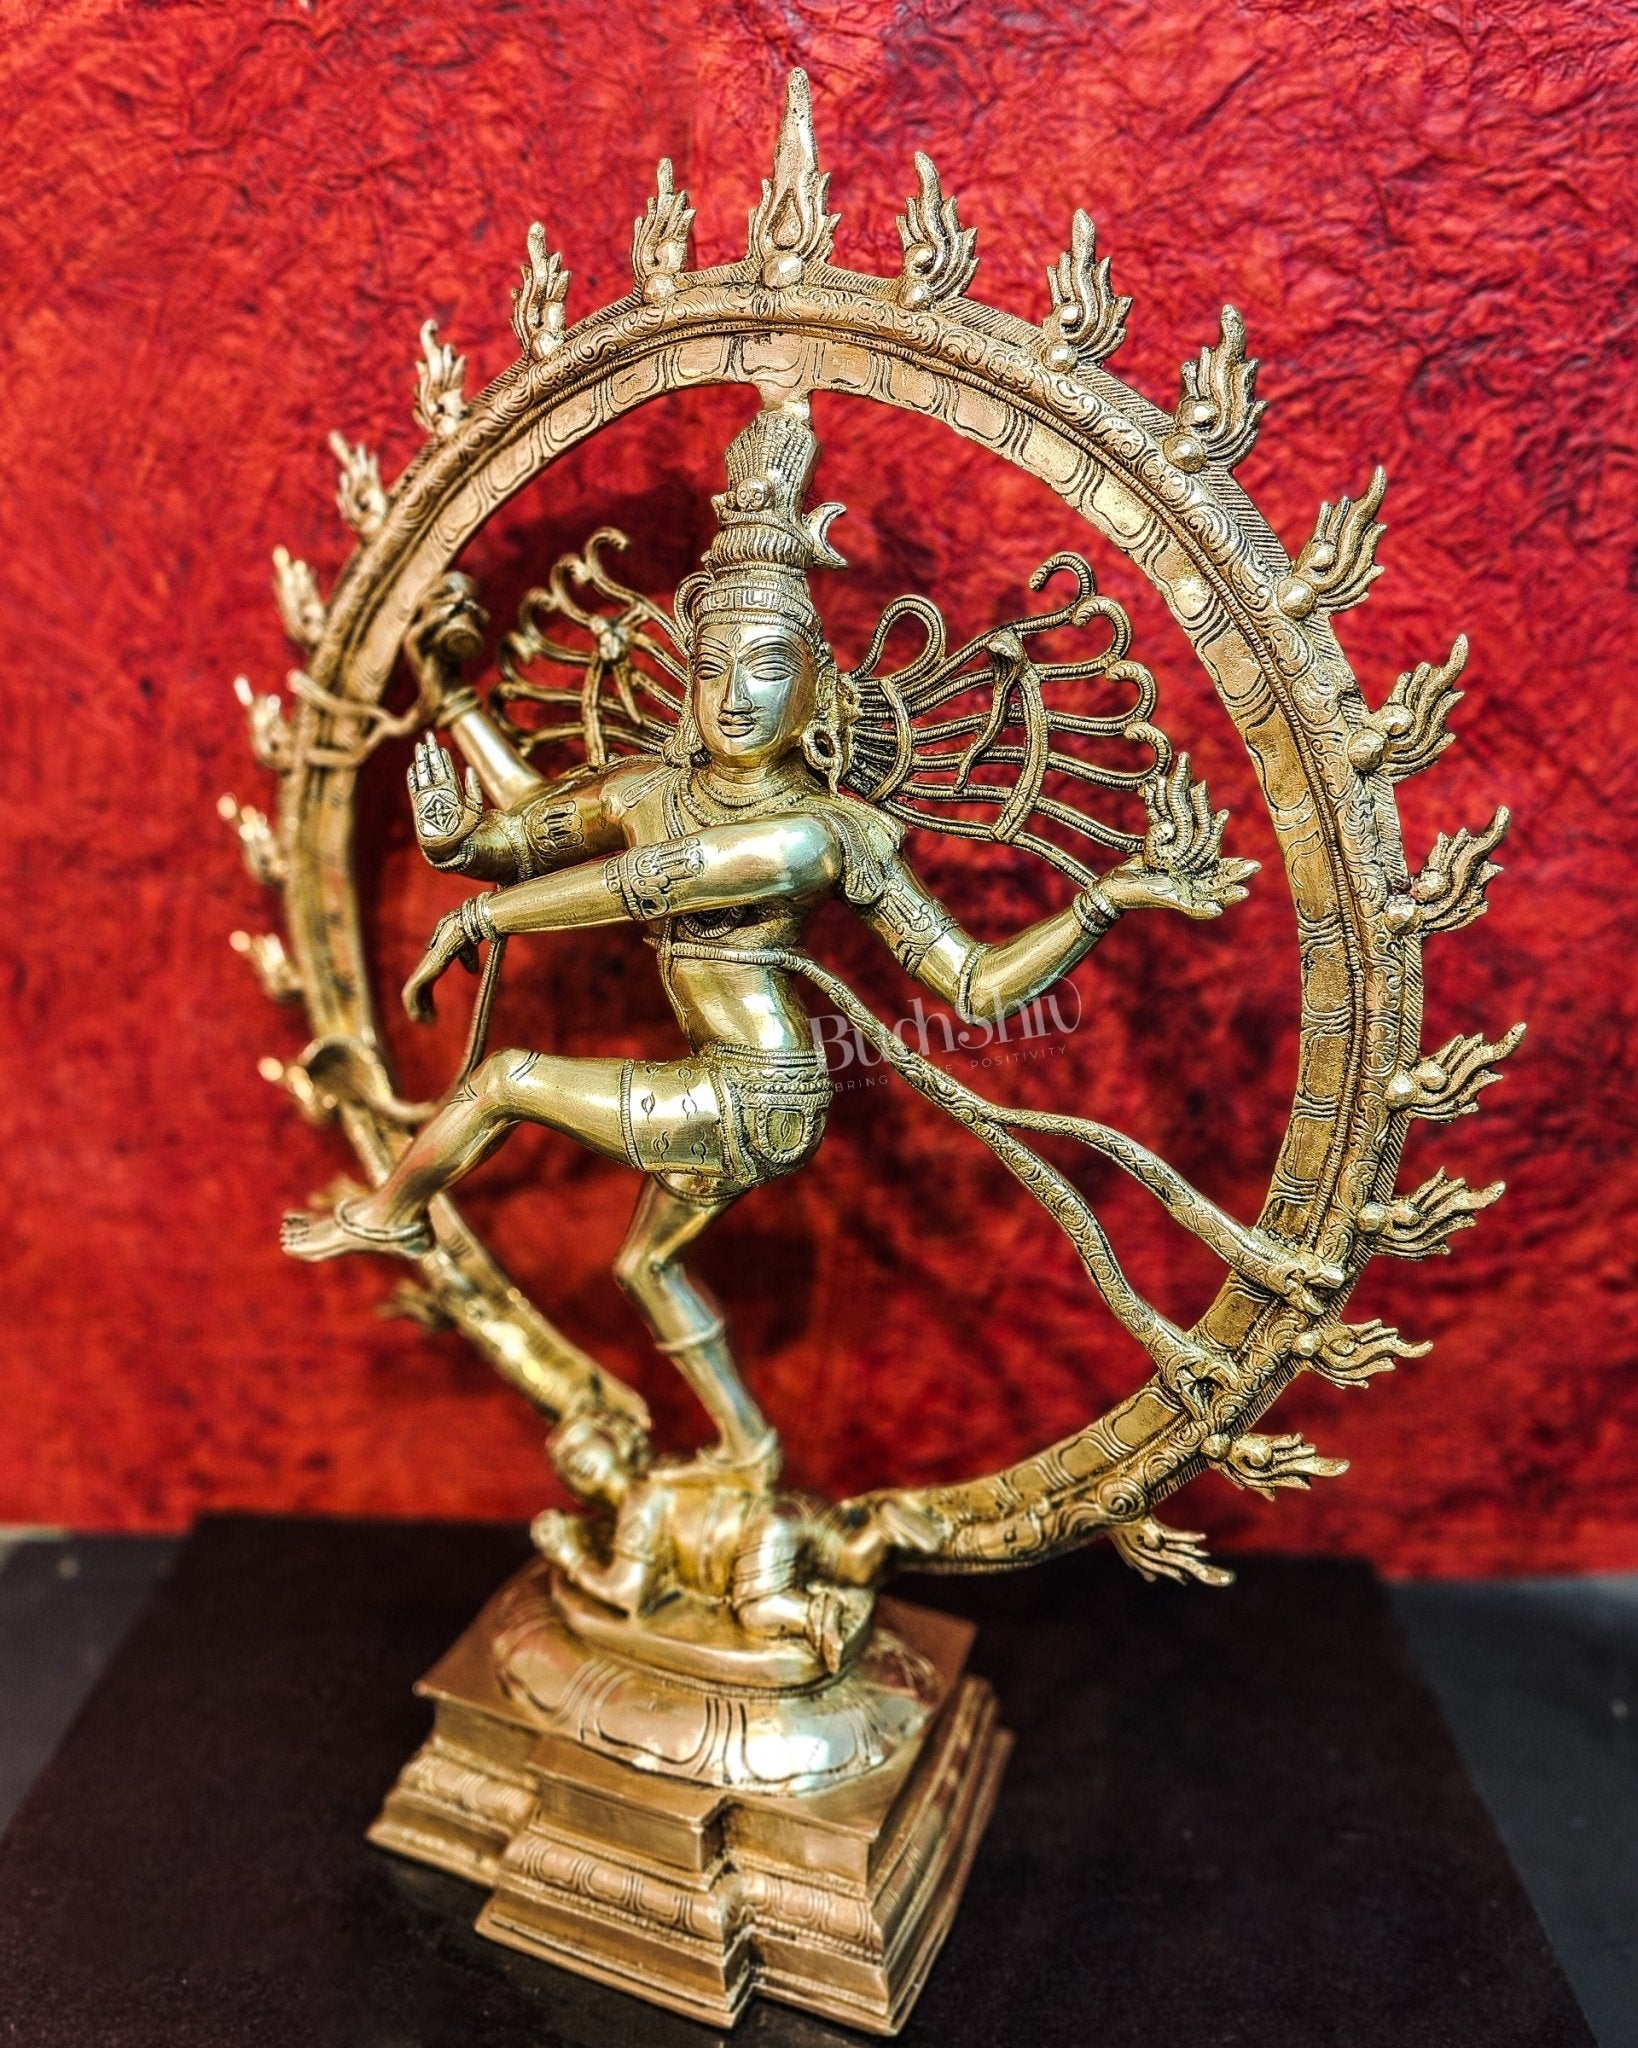 Brass Superfine Nataraja Statue 25" - Budhshiv.com